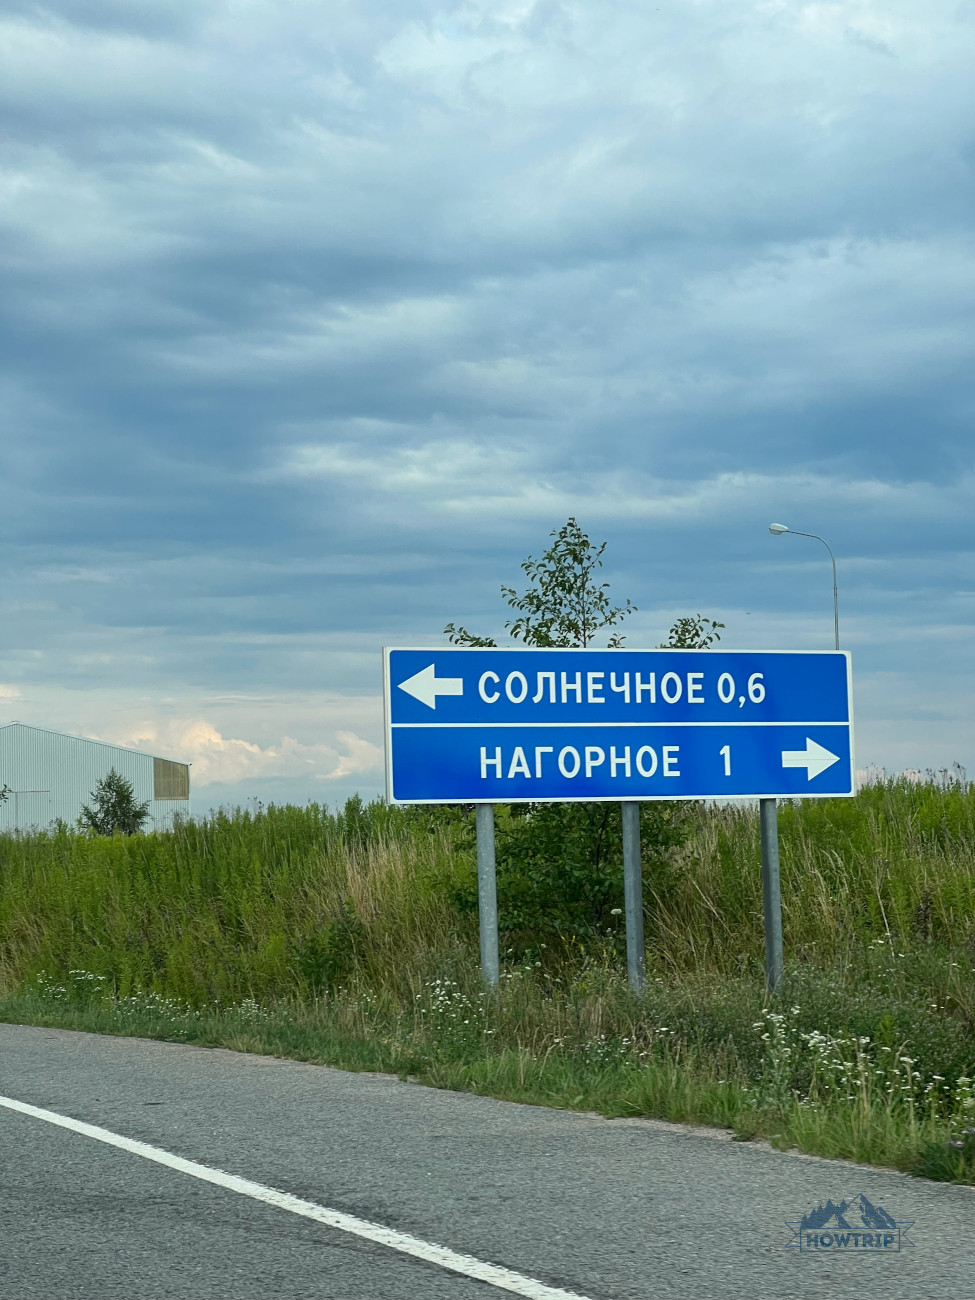 знаки на дороге в Калининграде